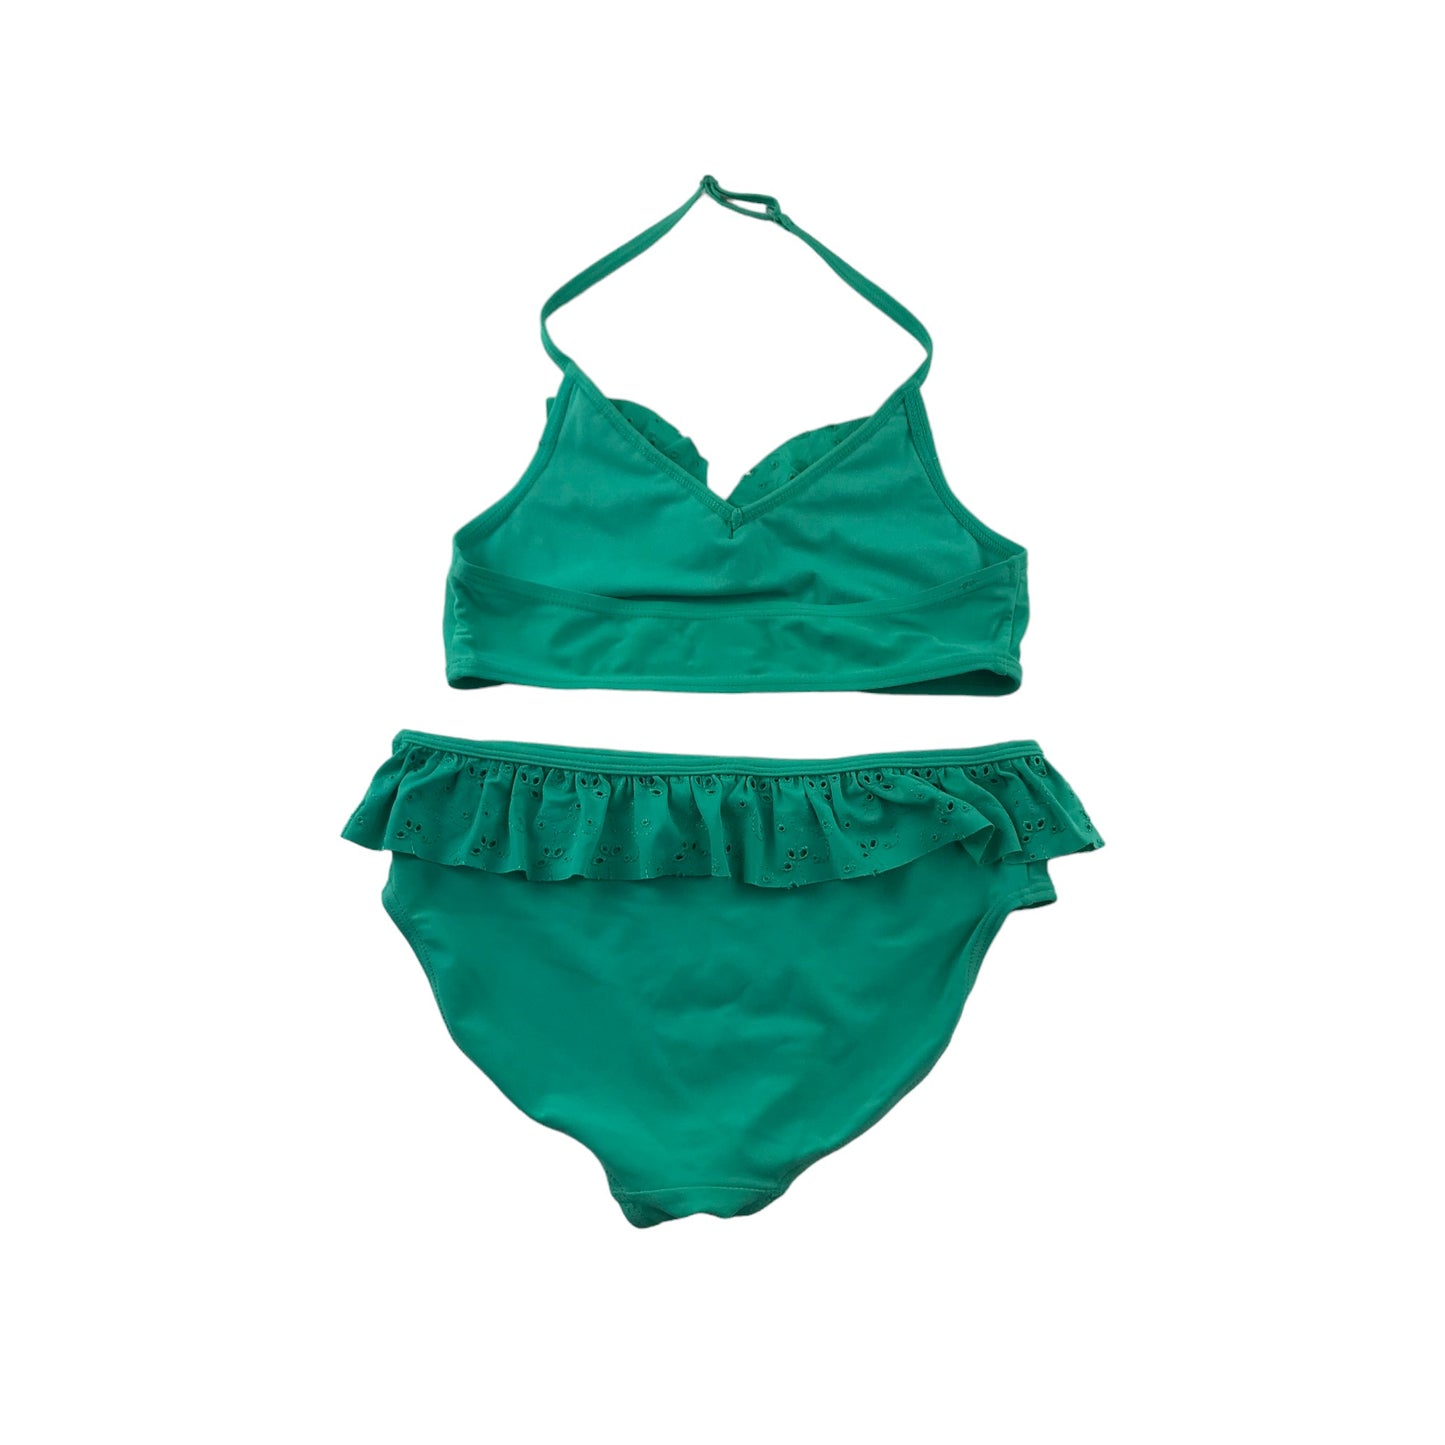 Next Bikini Age 13 Mint Green Lace Style Peplum 2-Piece Set